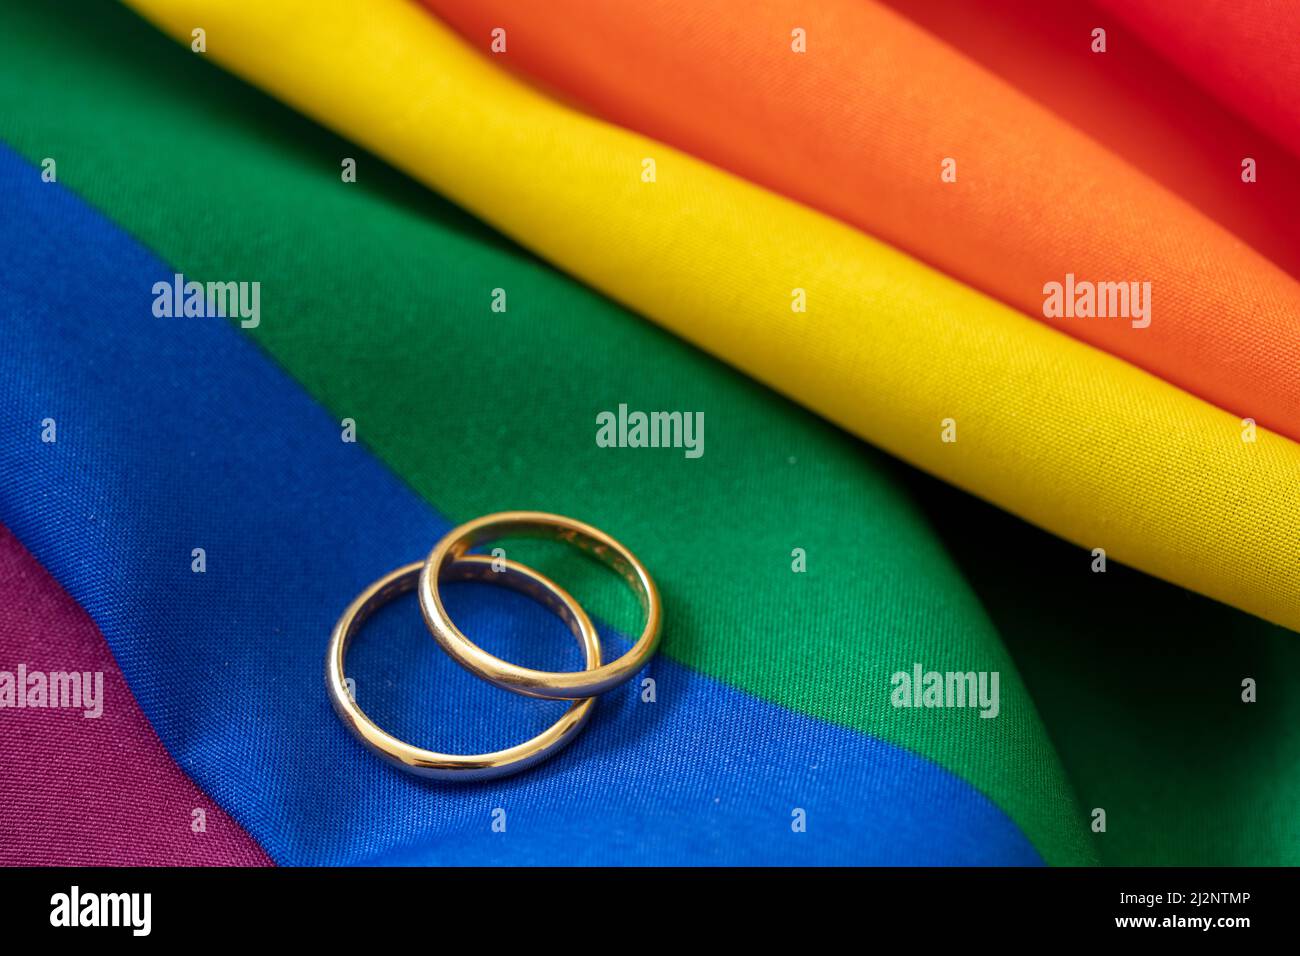 Mariage gay LGBT. Paire d'anneaux dorés sur tissu de couleur arc-en-ciel avec plis, vue rapprochée. Copier l'espace. Banque D'Images